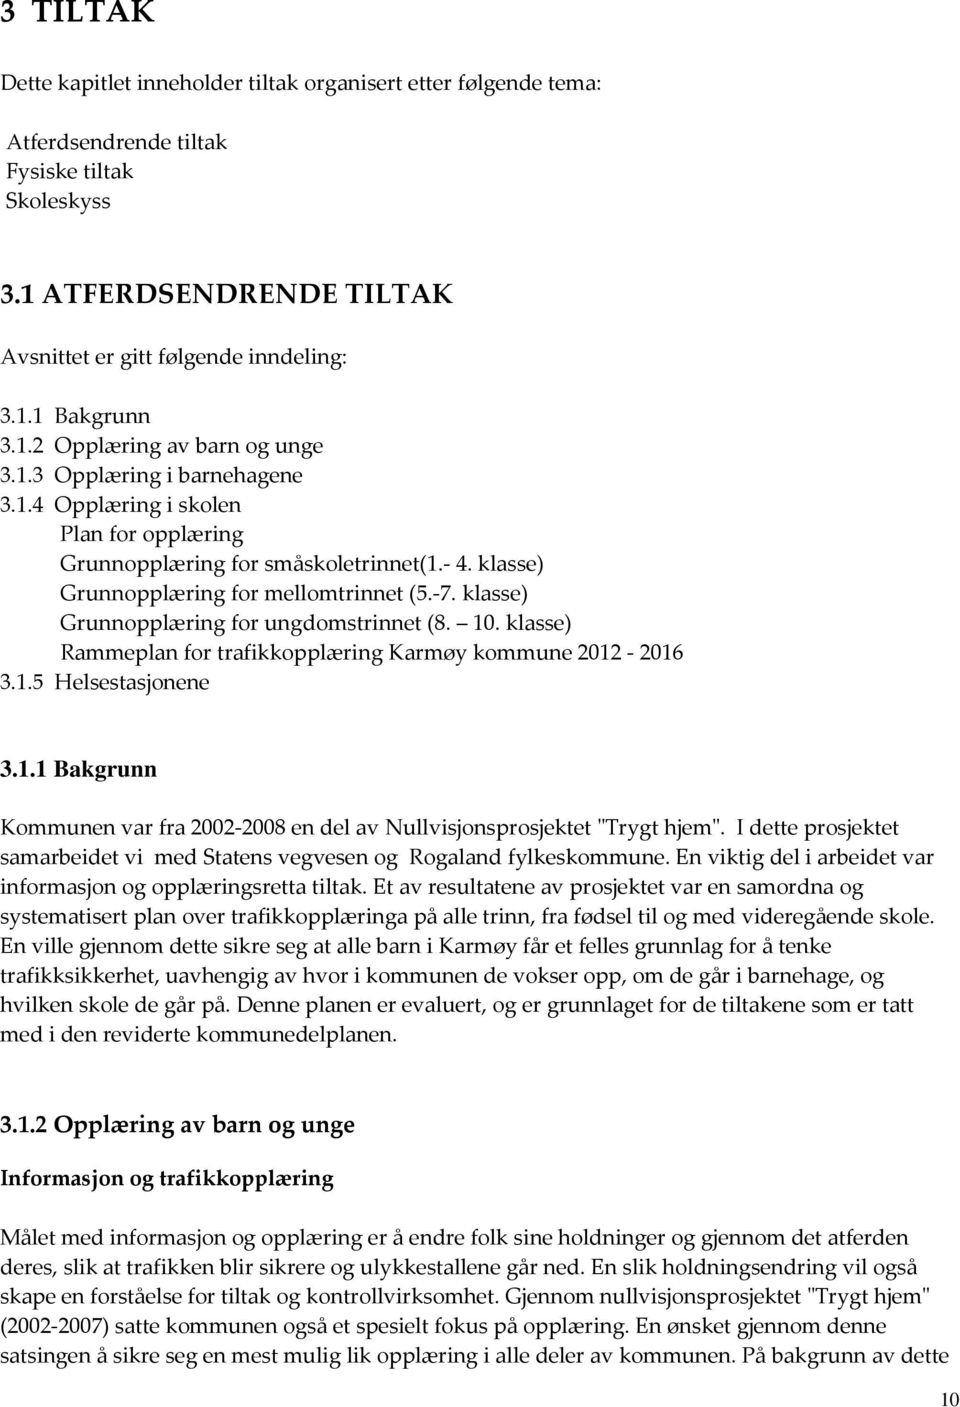 klasse) Grunnopplæring for ungdomstrinnet (8. 10. klasse) Rammeplan for trafikkopplæring Karmøy kommune 2012-2016 3.1.5 Helsestasjonene 3.1.1 Bakgrunn Kommunen var fra 2002-2008 en del av Nullvisjonsprosjektet "Trygt hjem".